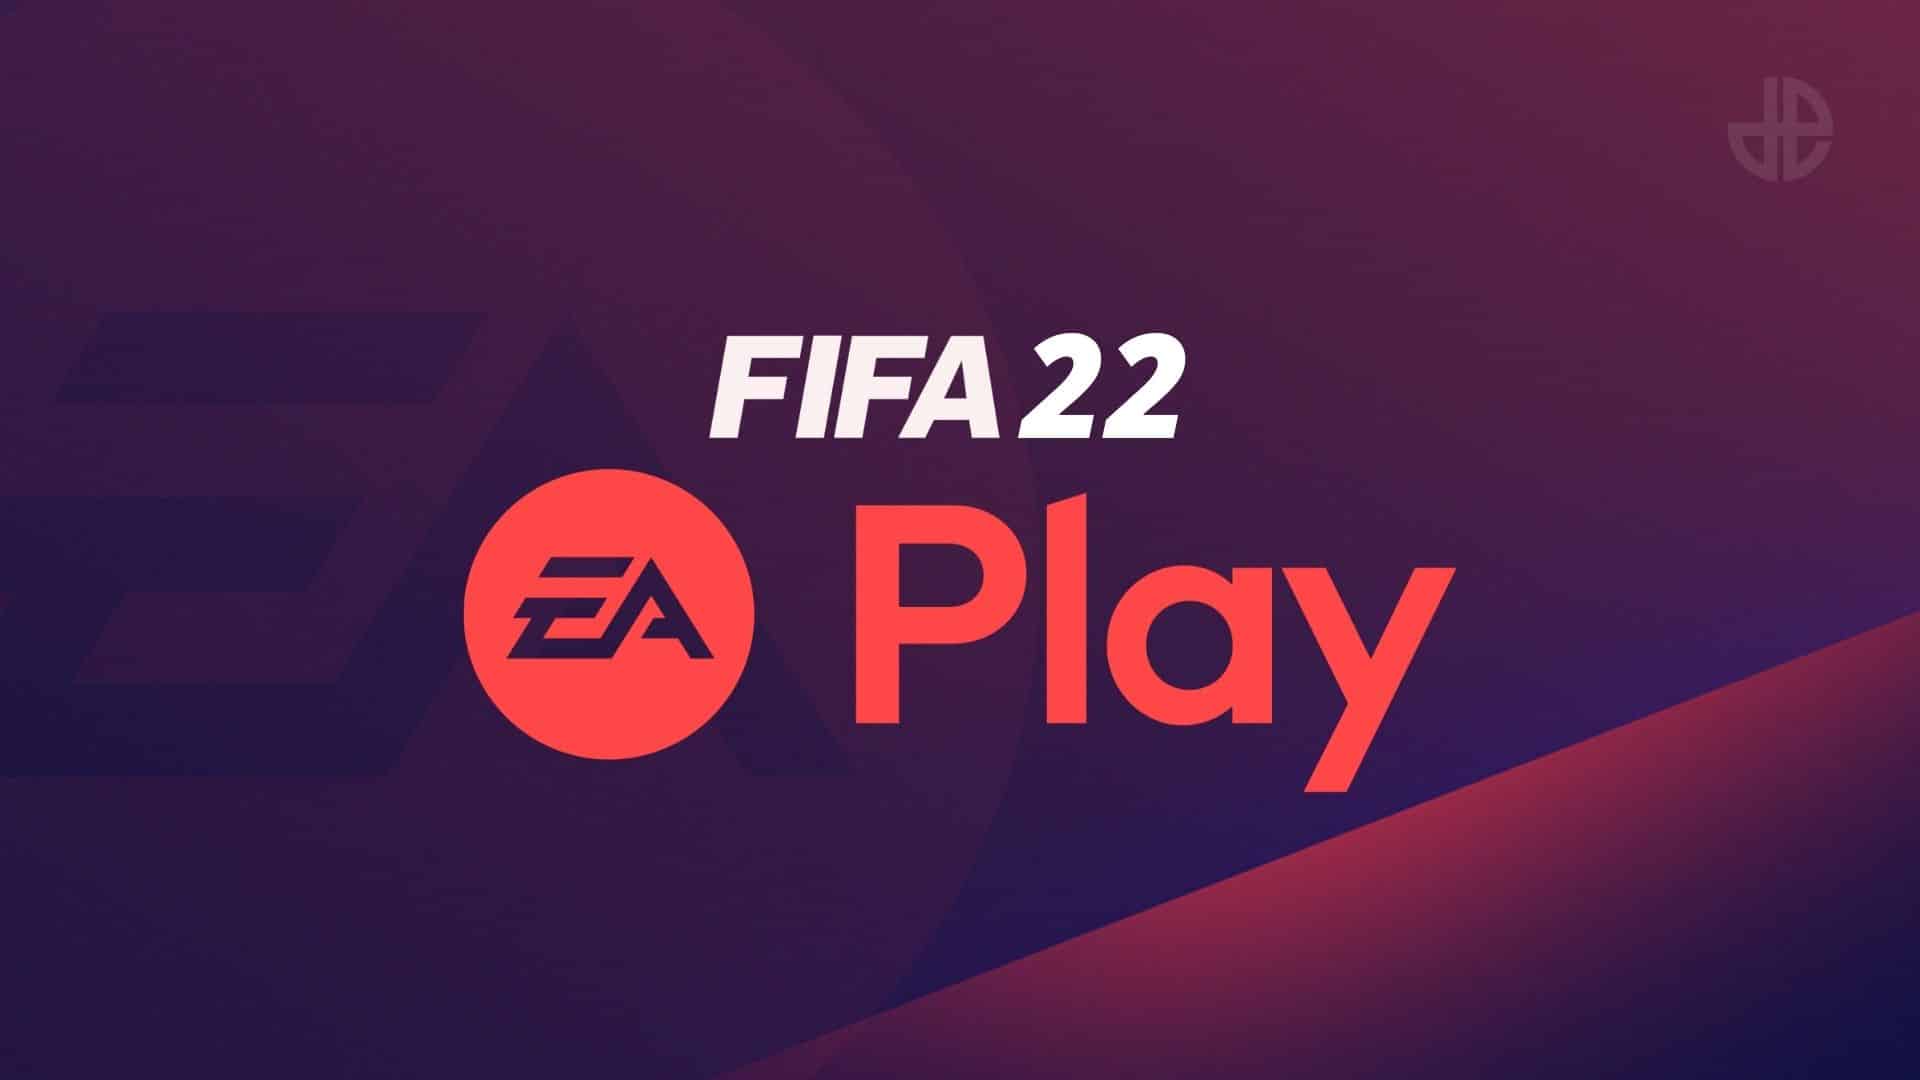 FIFA 22 ea play